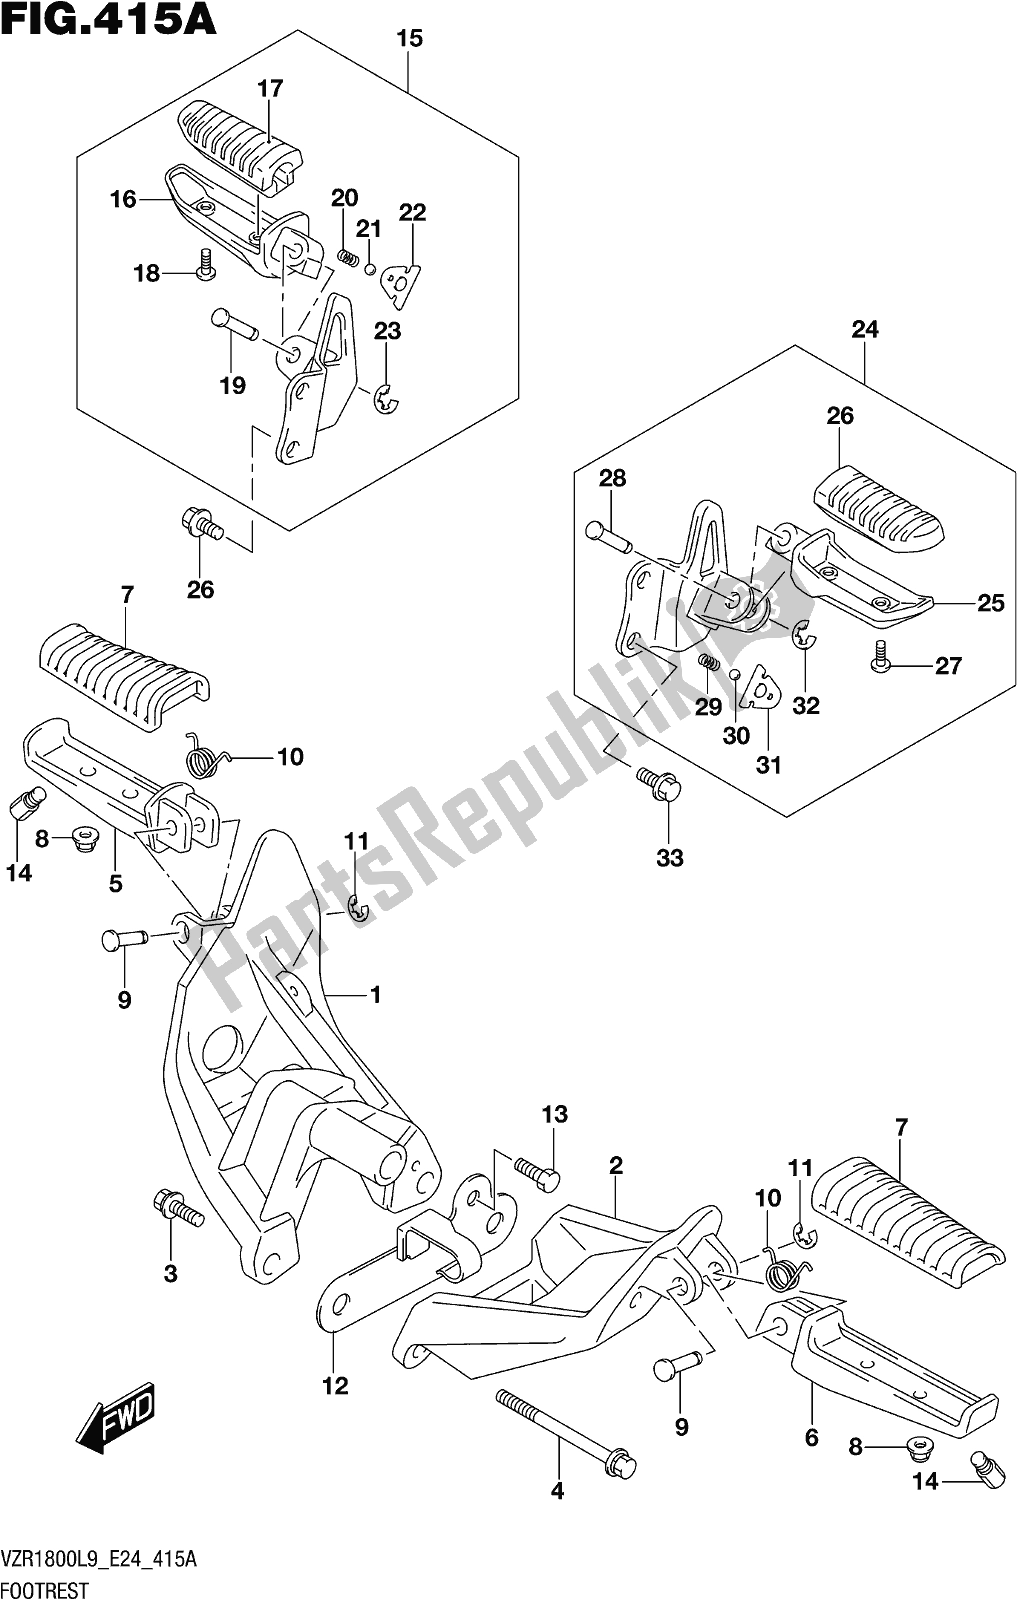 Alle onderdelen voor de Fig. 415a Footrest van de Suzuki VZR 1800 BZ 2019